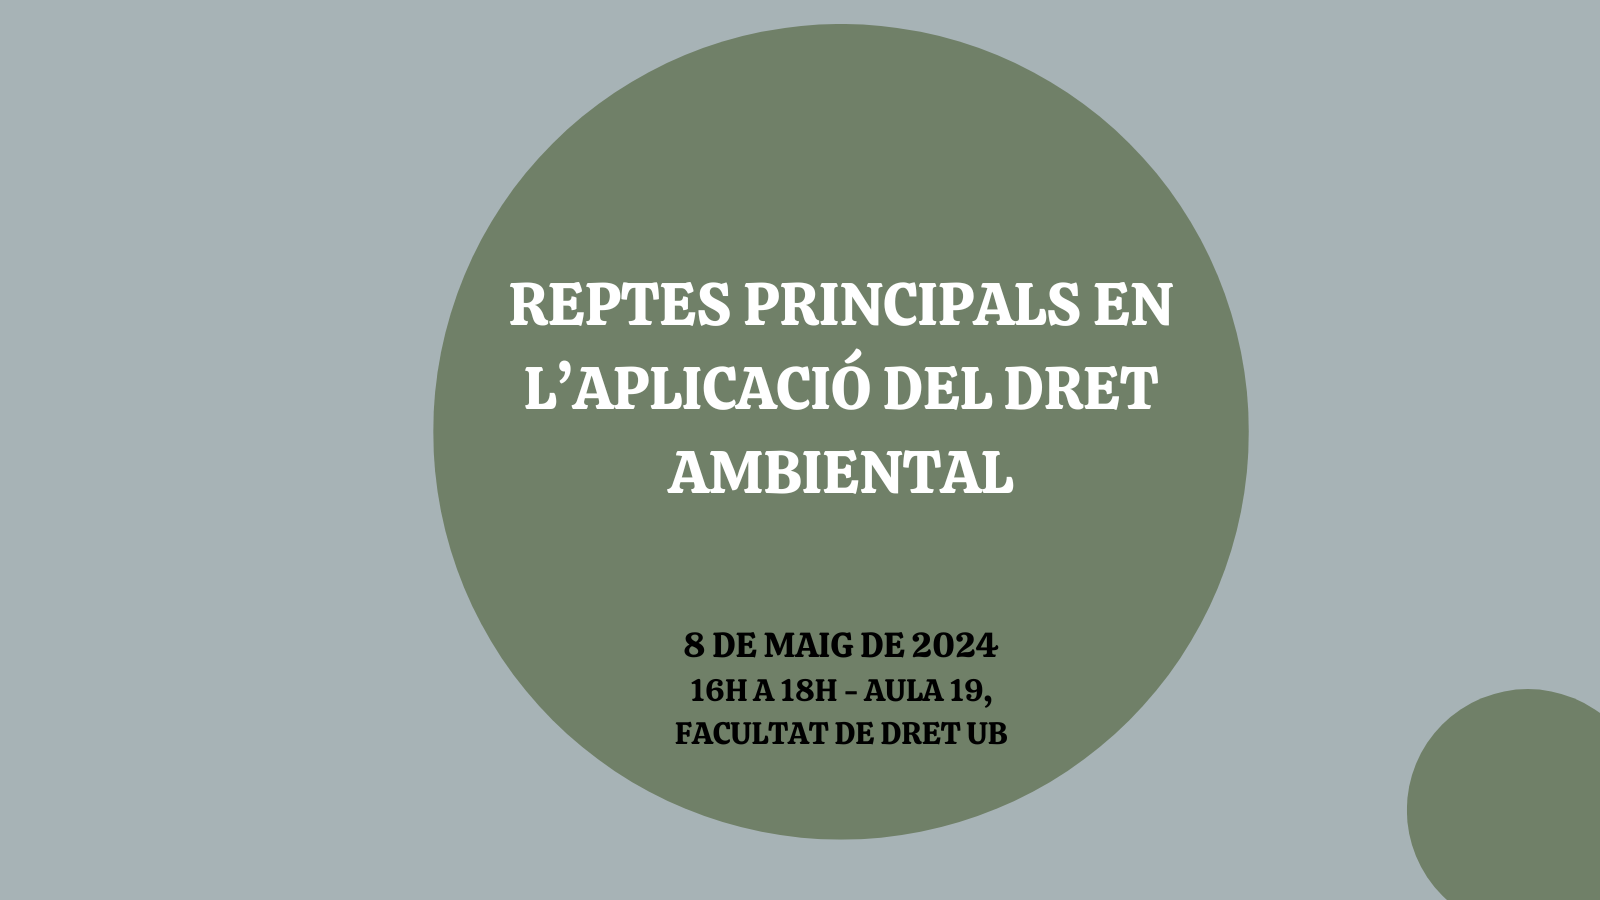 SEMINARI: REPTES PRINCIPALS EN L’APLICACIÓ DEL DRET AMBIENTAL